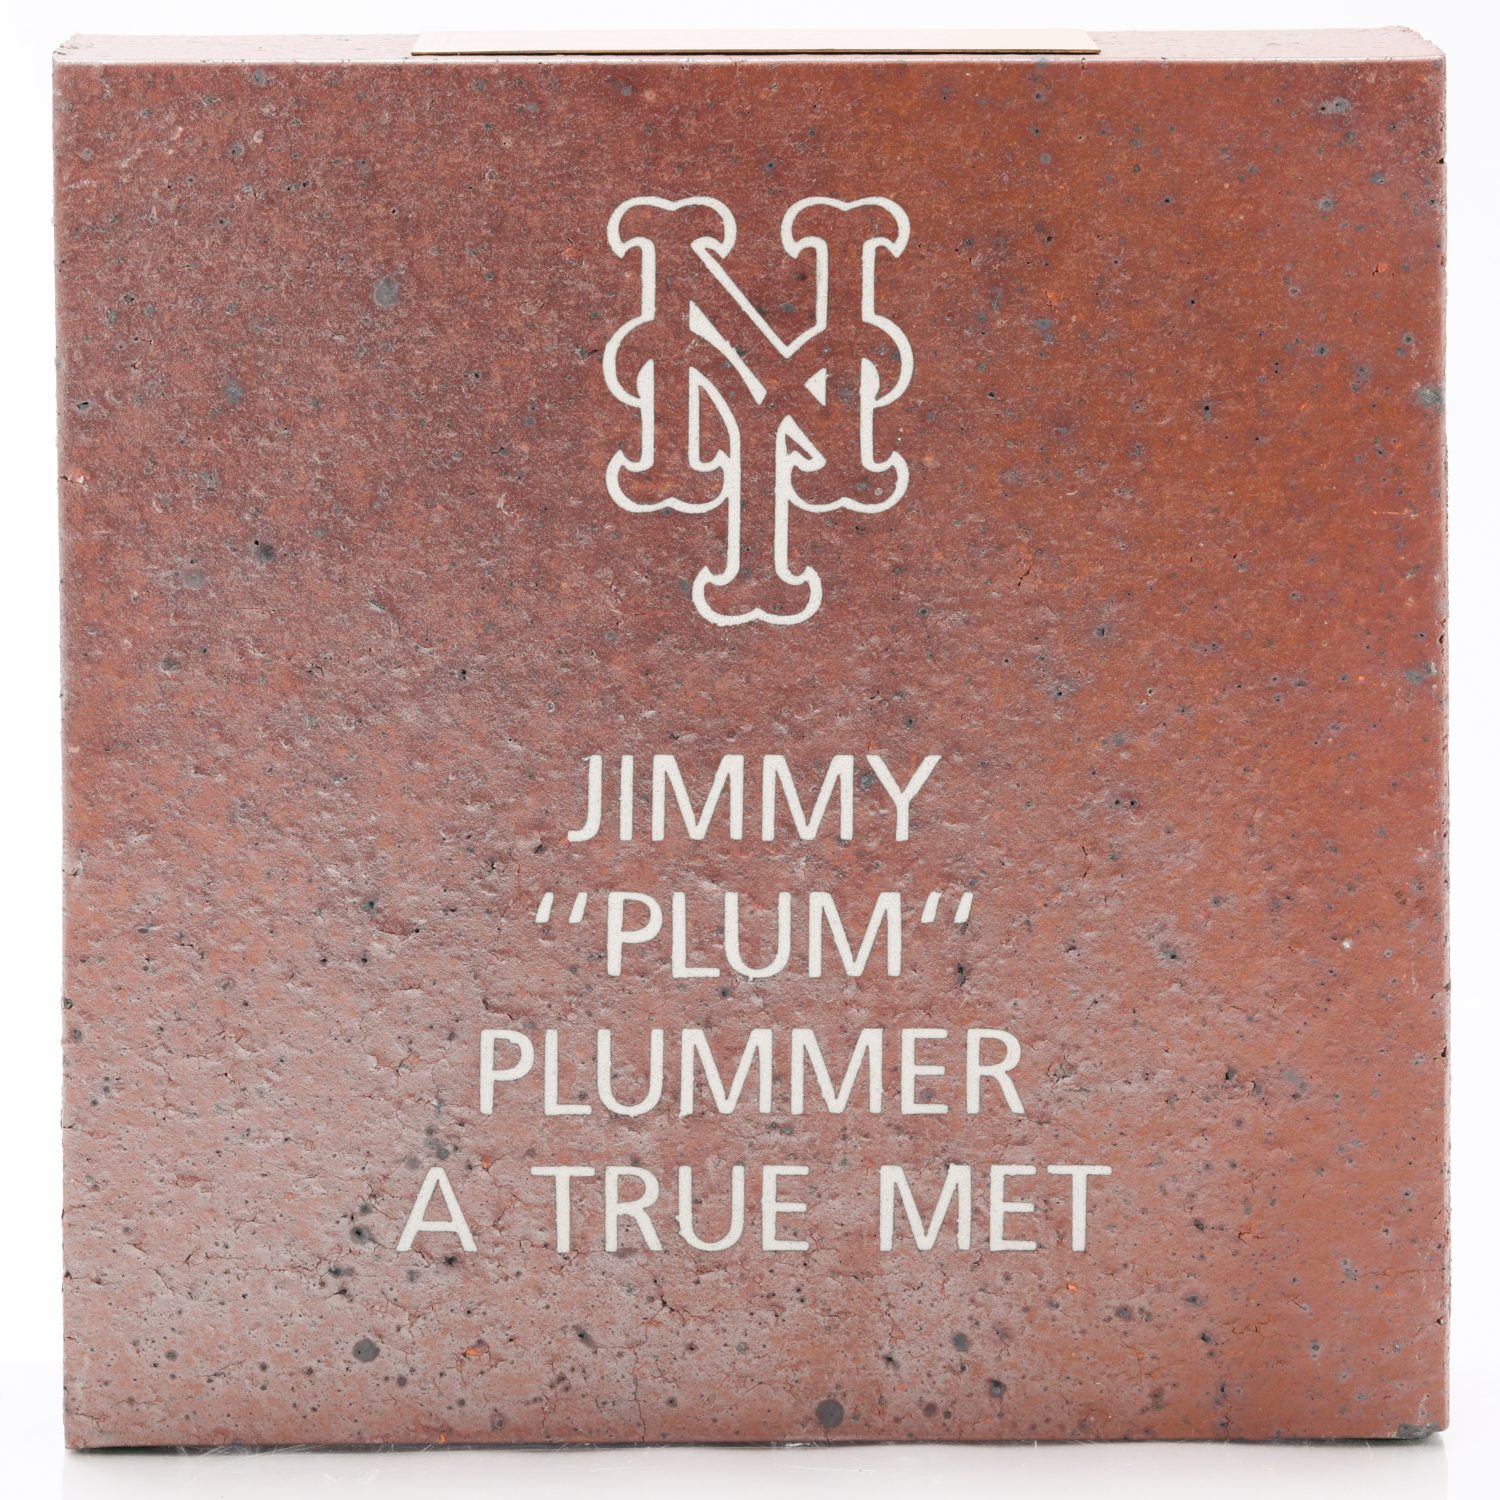 Brick Honors Jimmy Plummer as 'A True Met